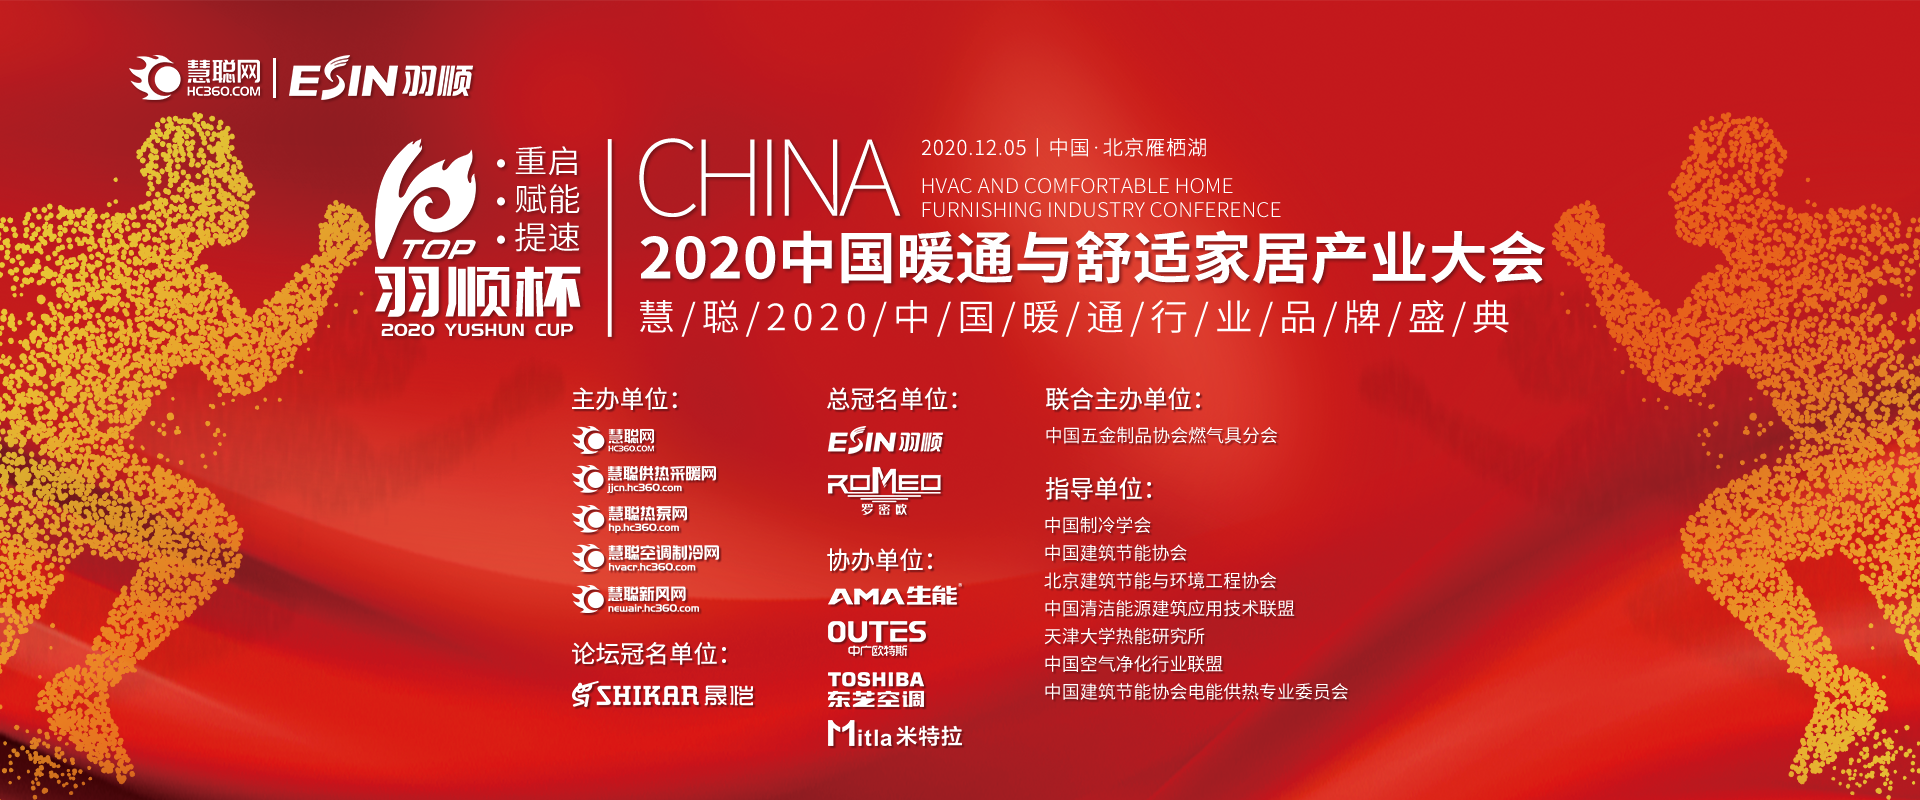 慧聪2020中国暖通行业品牌盛典